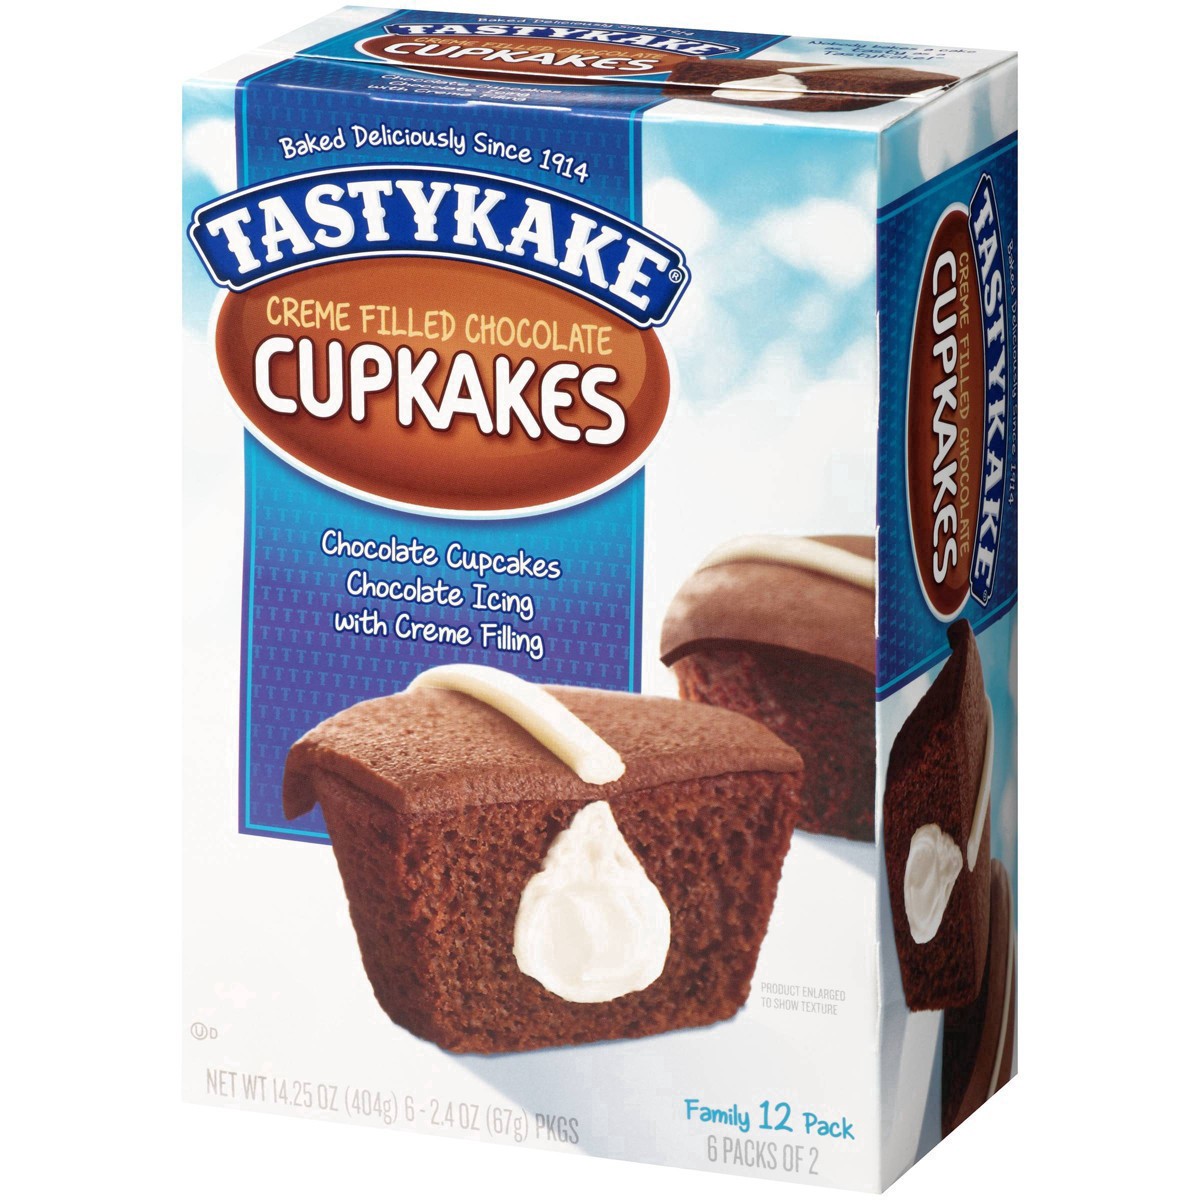 slide 44 of 59, Tastykake Creme Filled Chocolate Cupcakes 6-2.4 oz. Packs, 6 ct